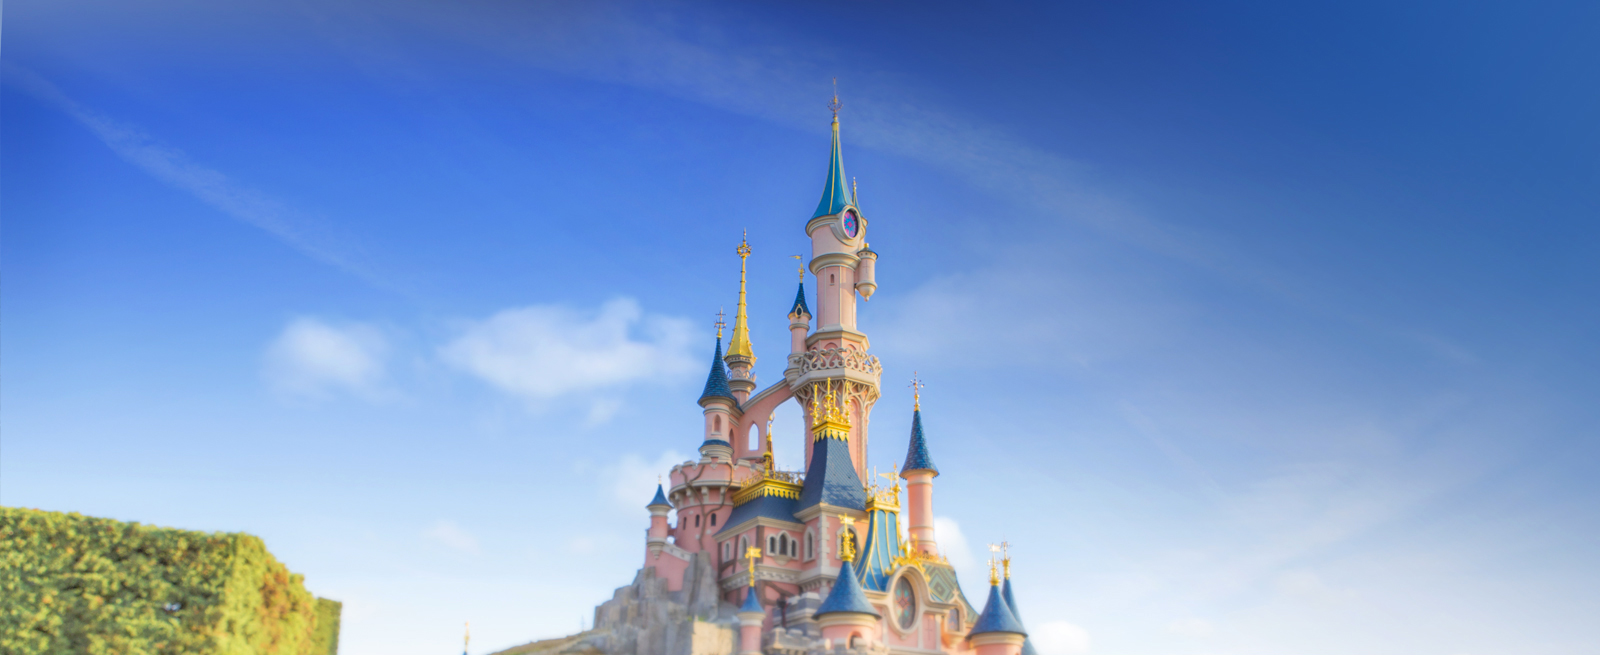 Castello Disneyland© Paris